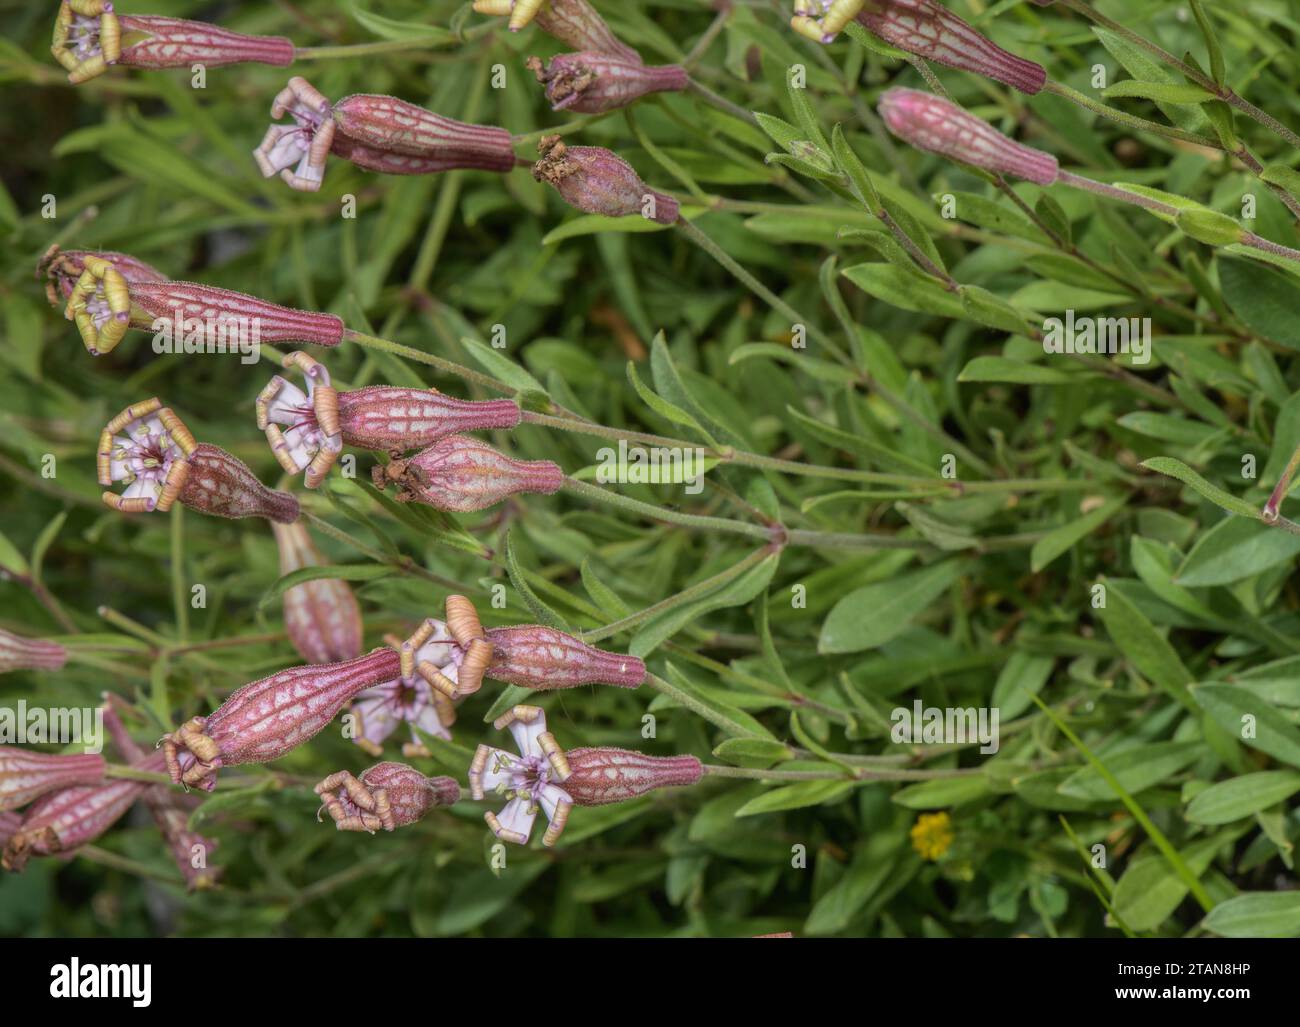 Valais catchfly, Silene vallesia in flower, Swiss Alps. Stock Photo